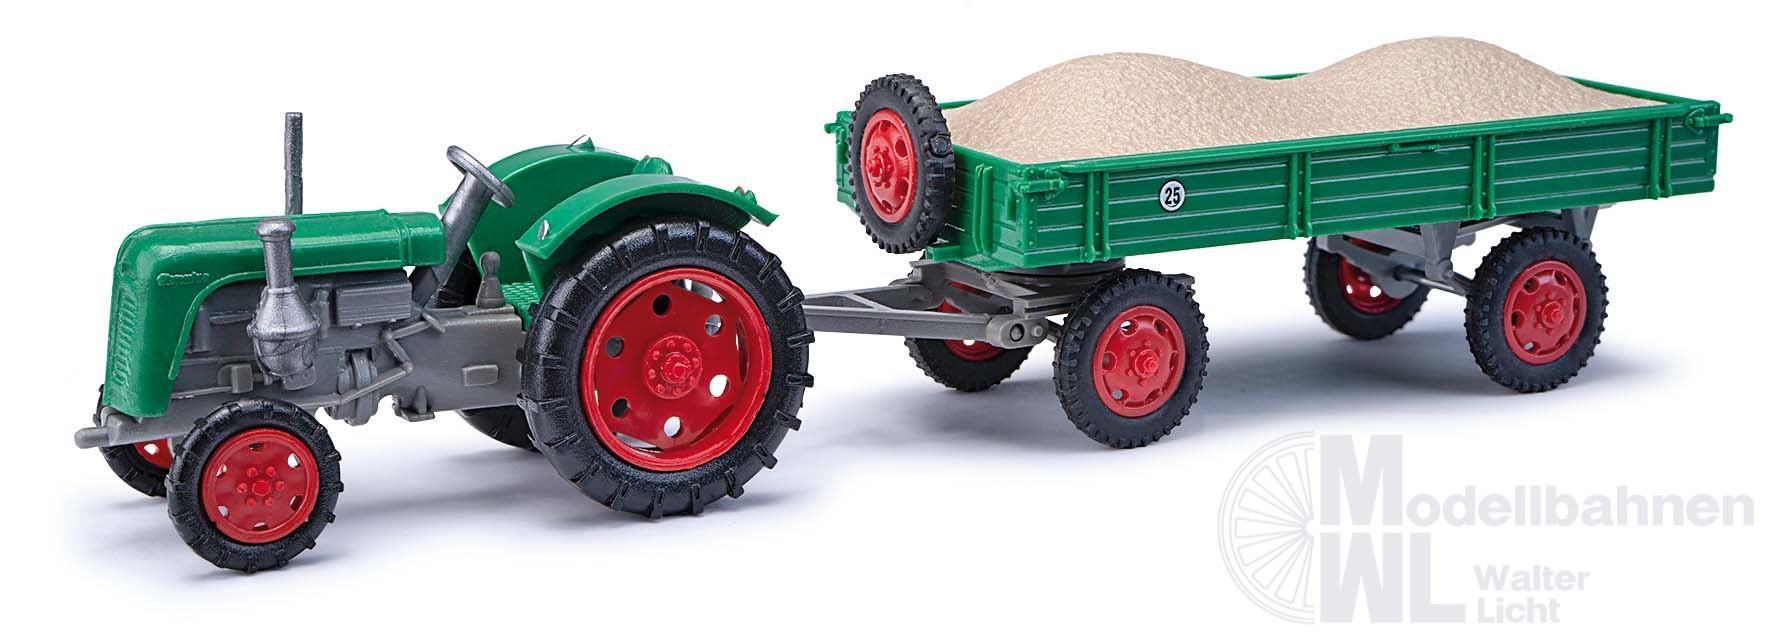 Melhose 210110112 - Traktor Famulus mit Anhänger und Kiesladung grün H0 1:87